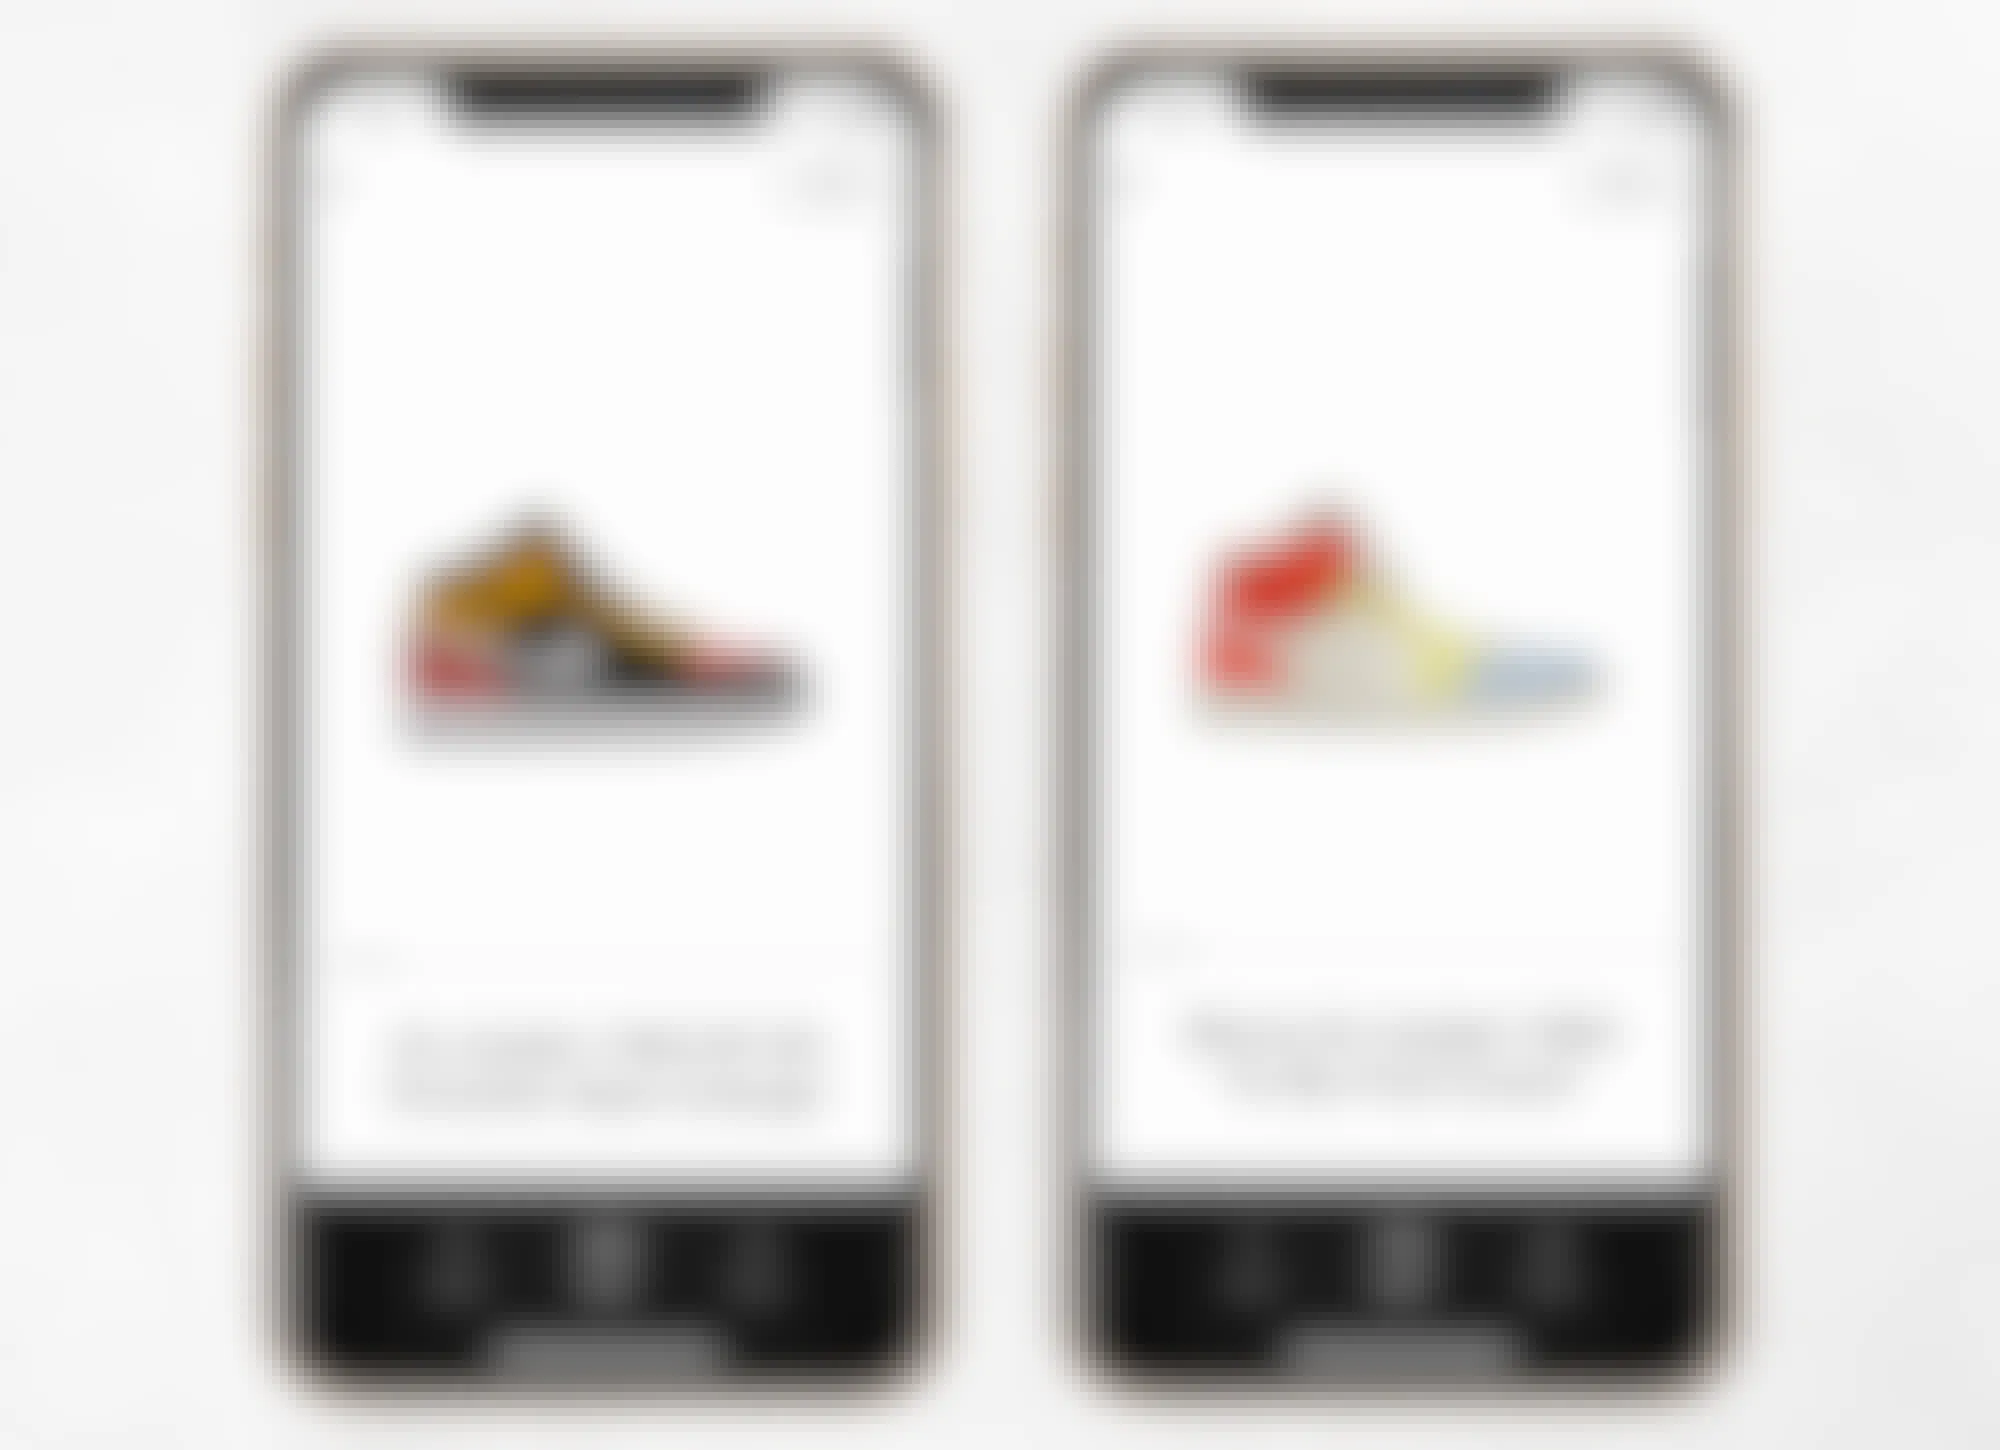 goat mobile app screenshots of air jordan 1 sneakers